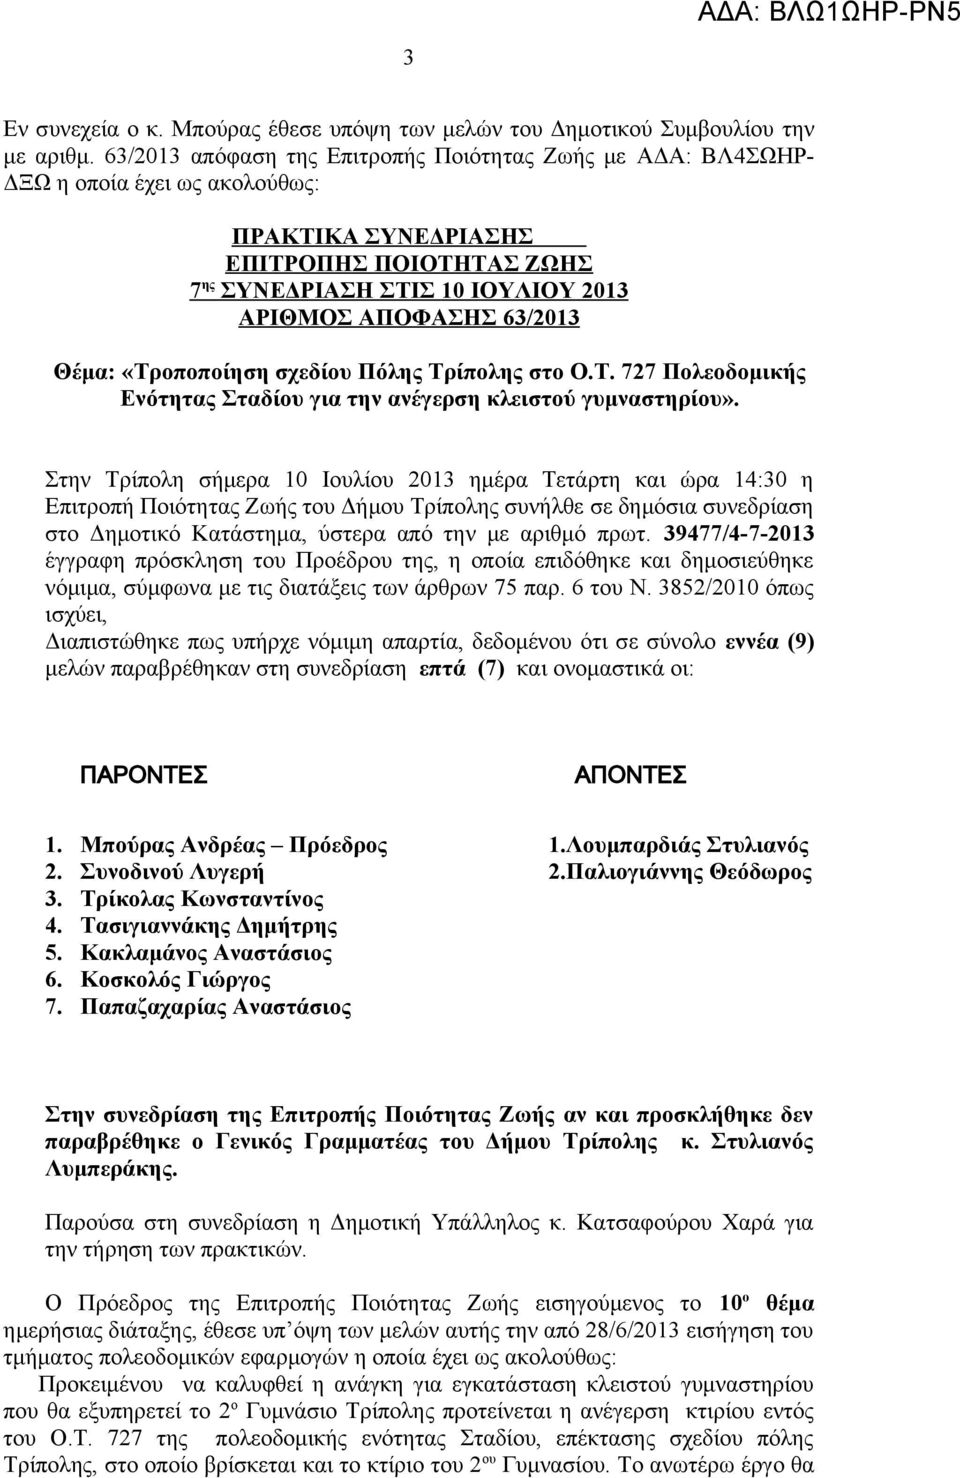 63/2013 Θέμα: «Tροποποίηση σχεδίου Πόλης Τρίπολης στο Ο.Τ. 727 Πολεοδομικής Ενότητας Σταδίου για την ανέγερση κλειστού γυμναστηρίου».